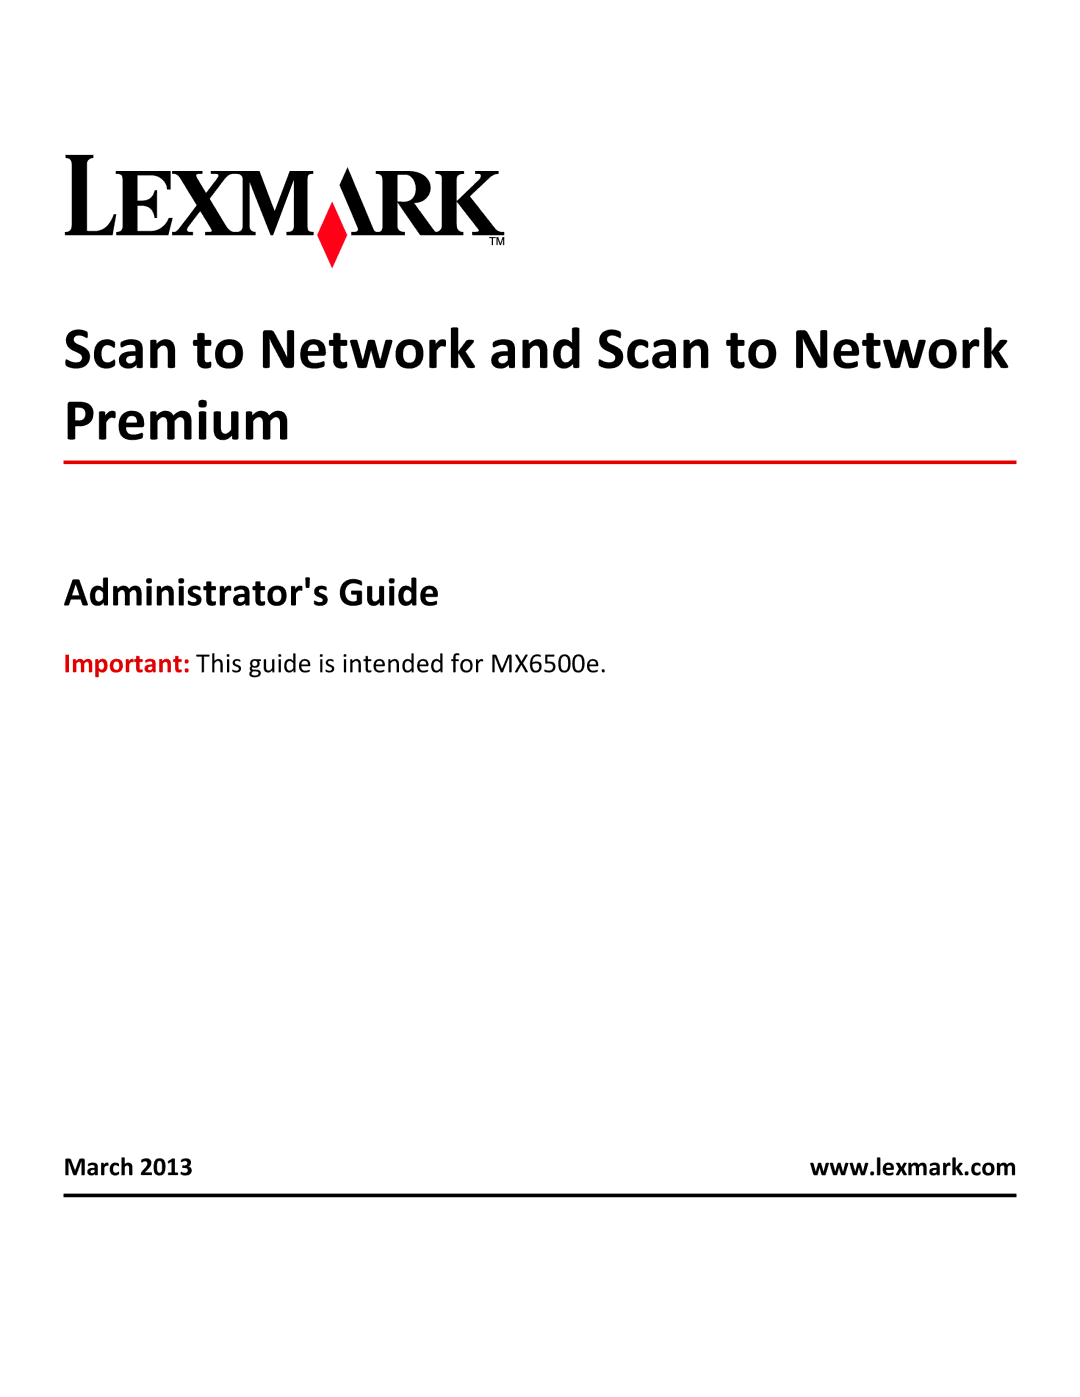 Lexmark MX6500E manual Administrators Guide, March 